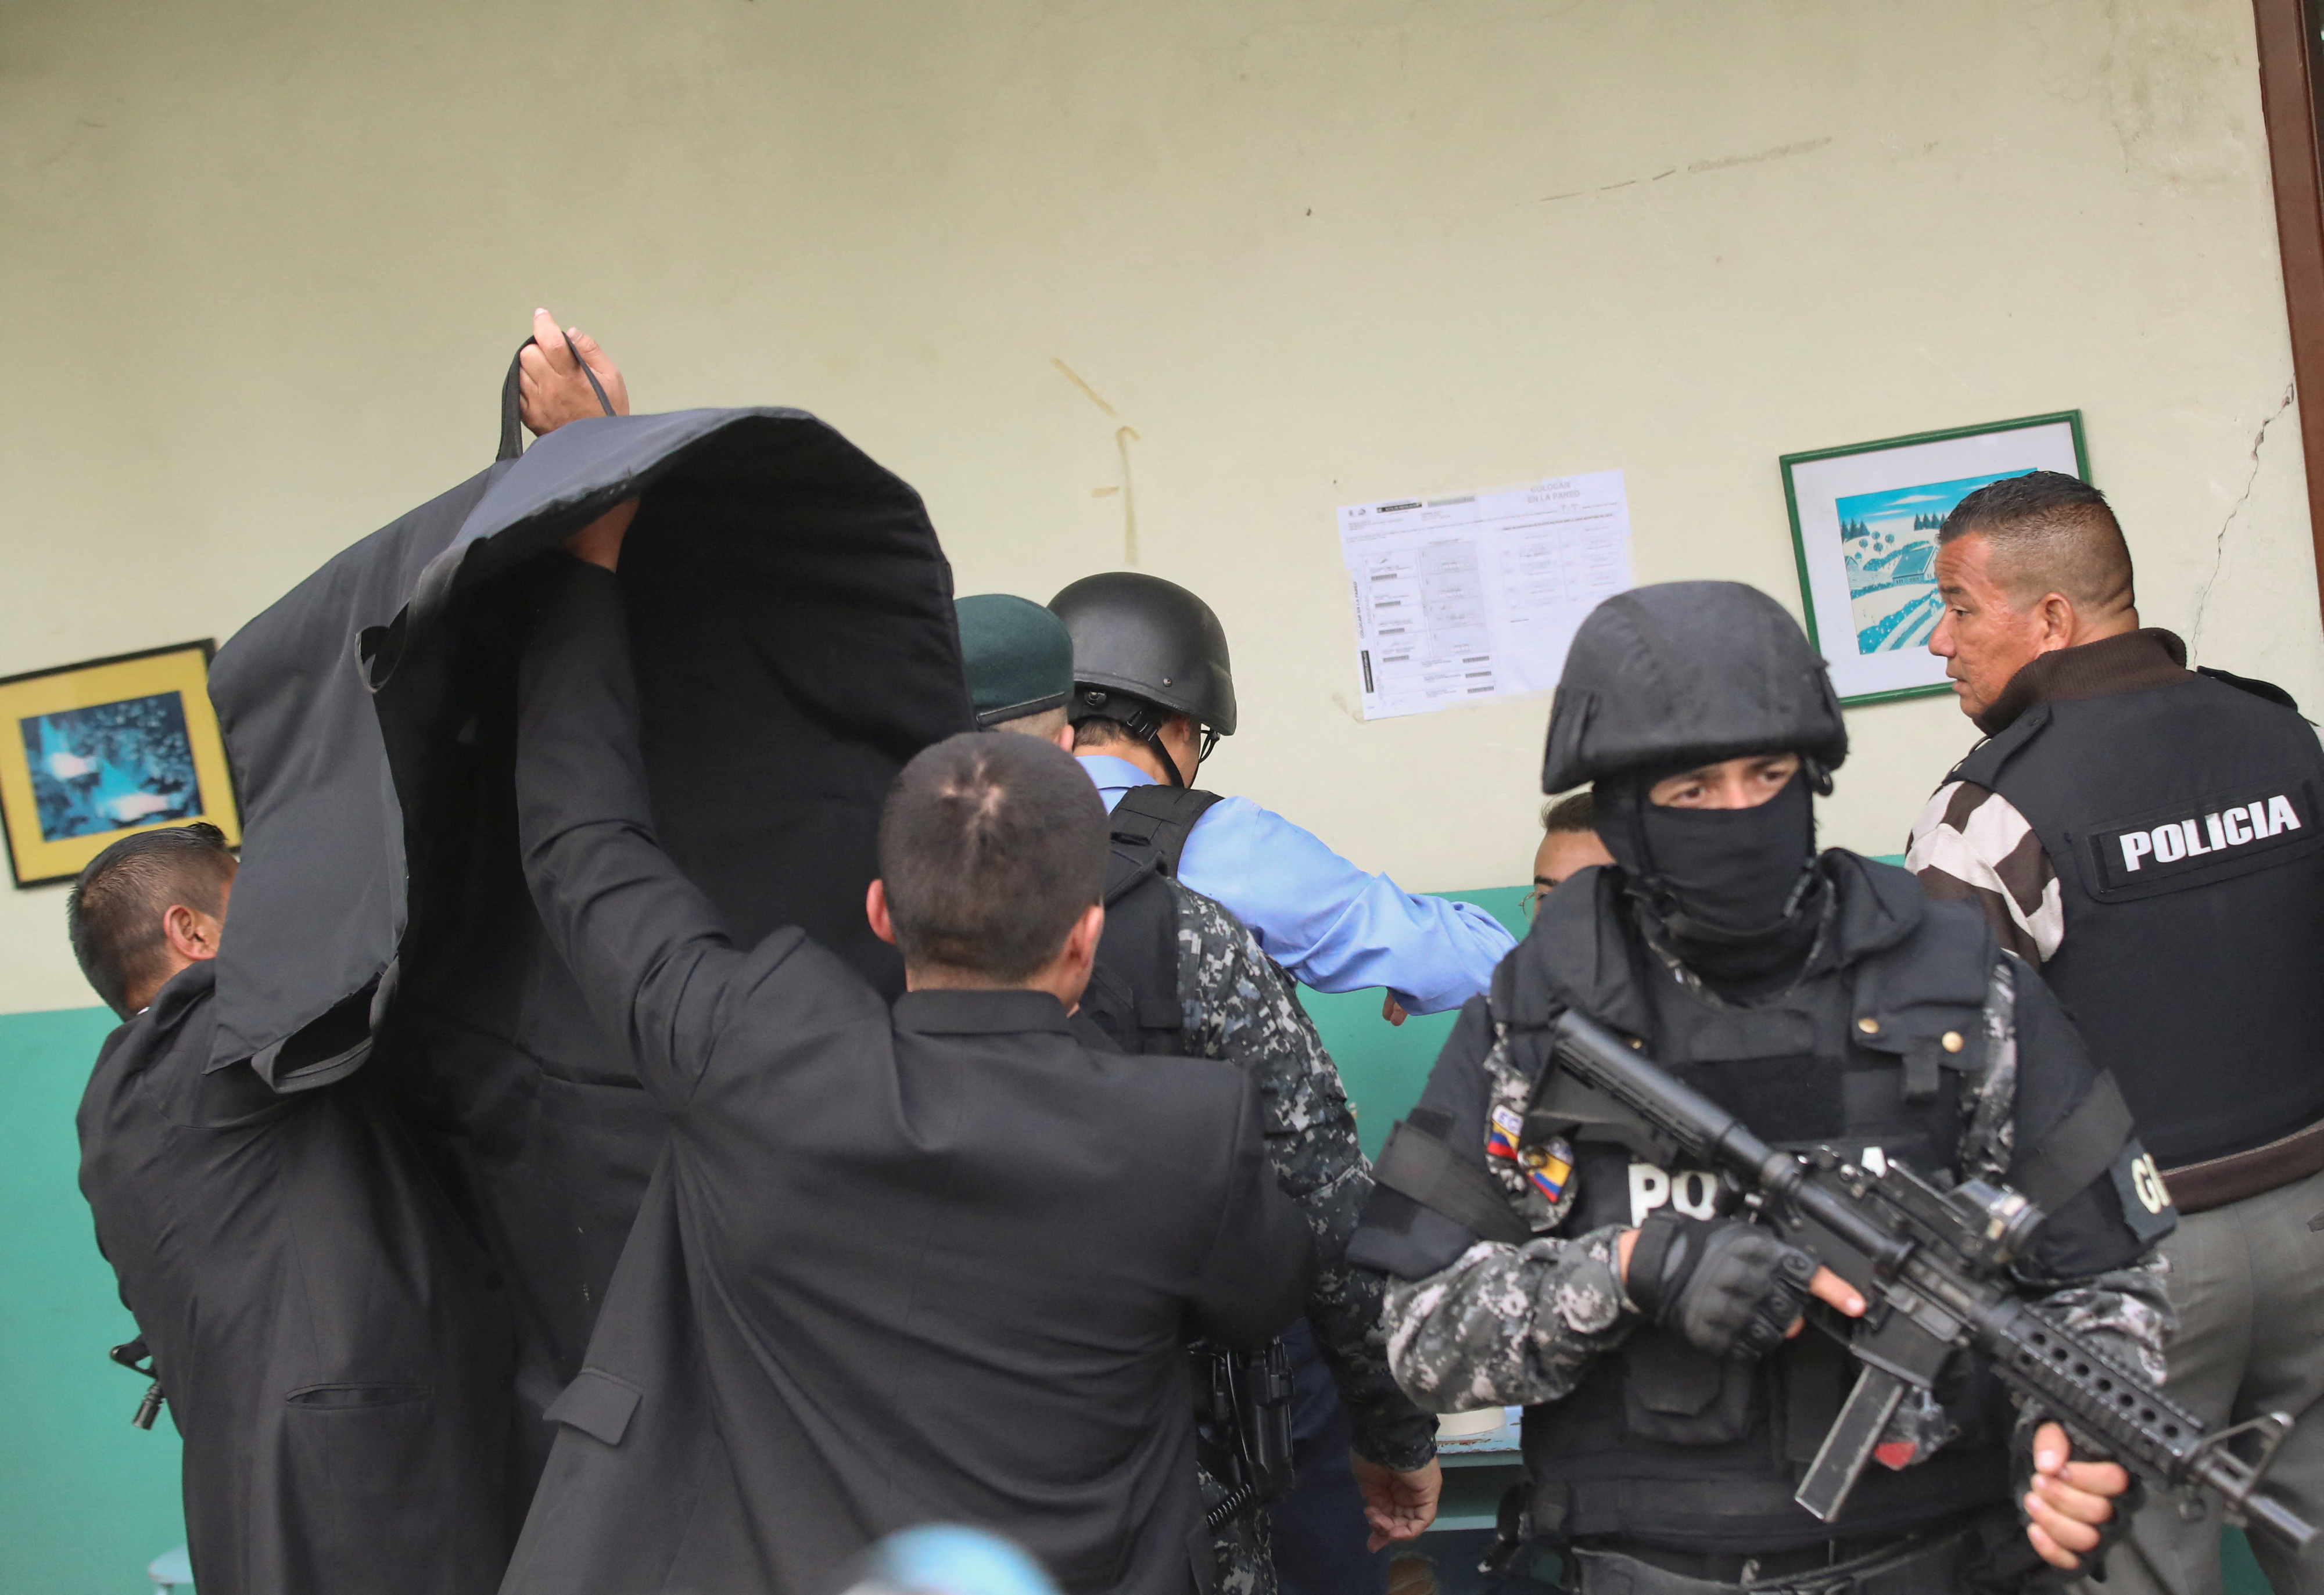 에콰도르 경찰이 투표하는 주리타 후보의 뒤를 암막으로 가리고 있는 모습. 키토 로이터 연합뉴스